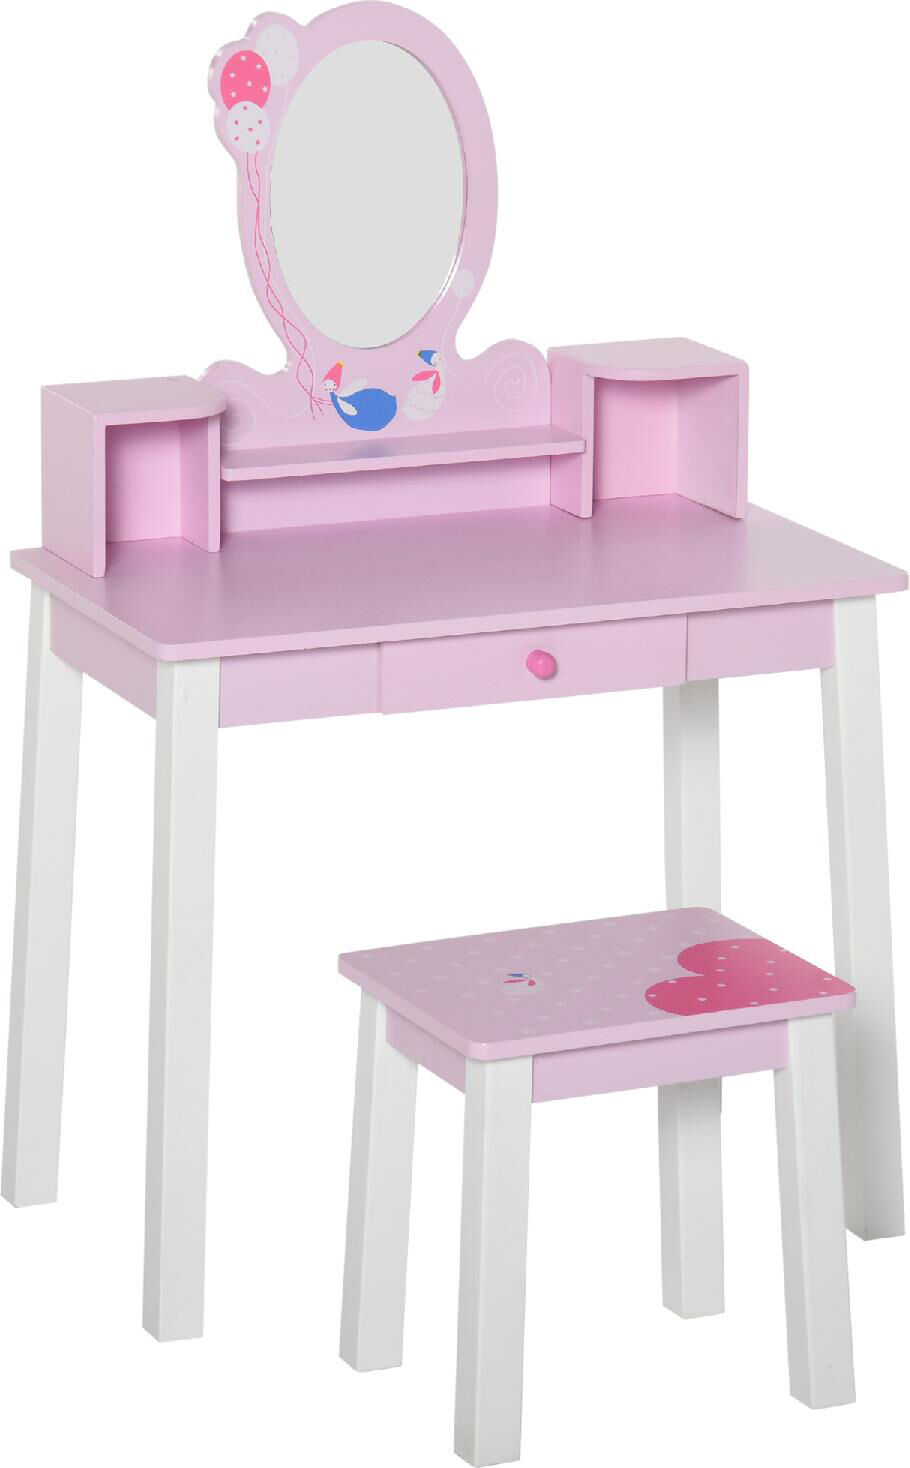 dechome 355514 set tavolo toeletta specchio e sgabello in legno per bambini rosa - 355514